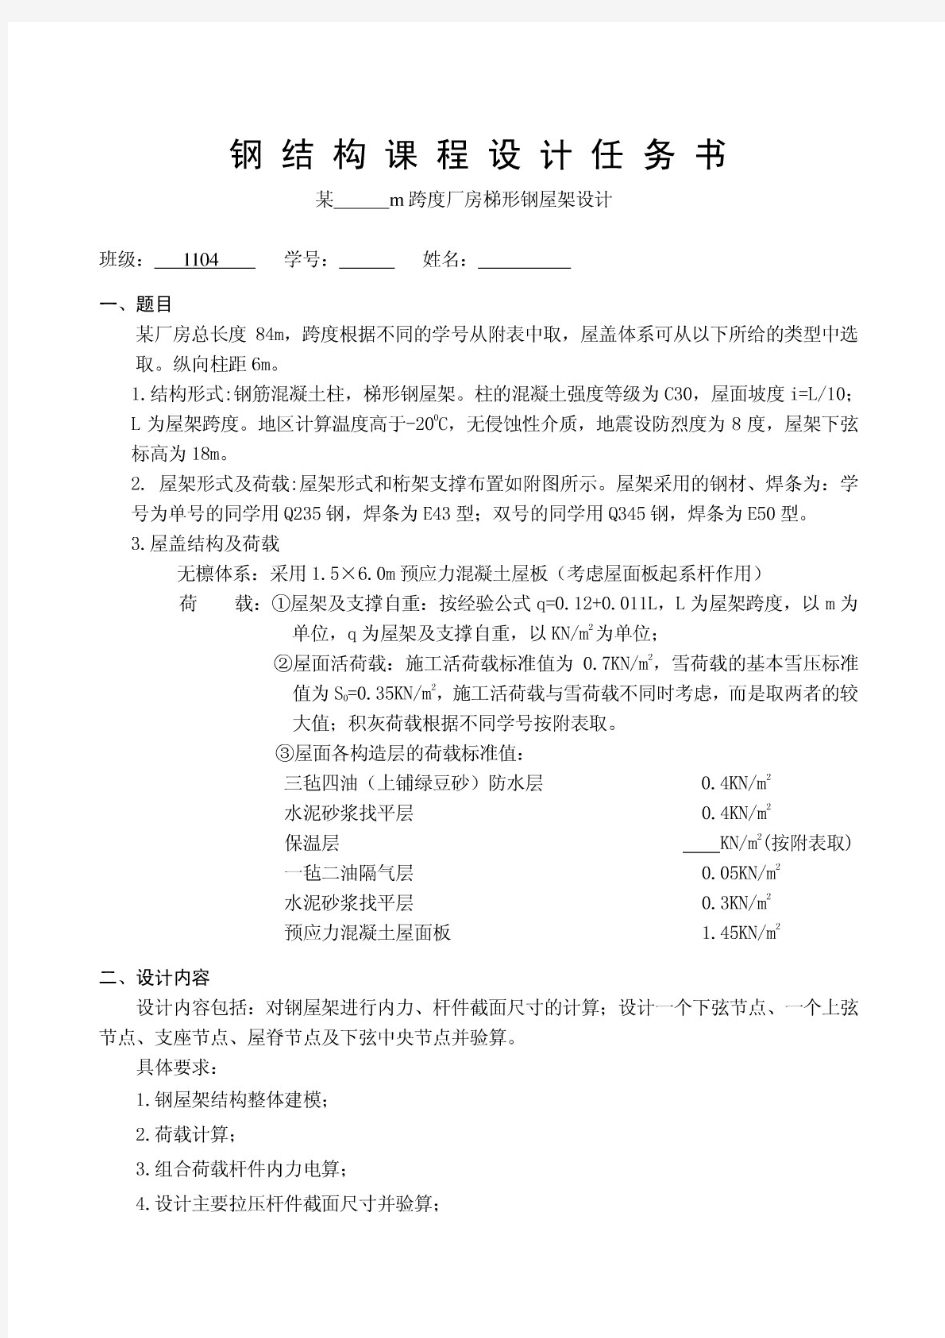 武汉理工大学钢结构课程设计任务书